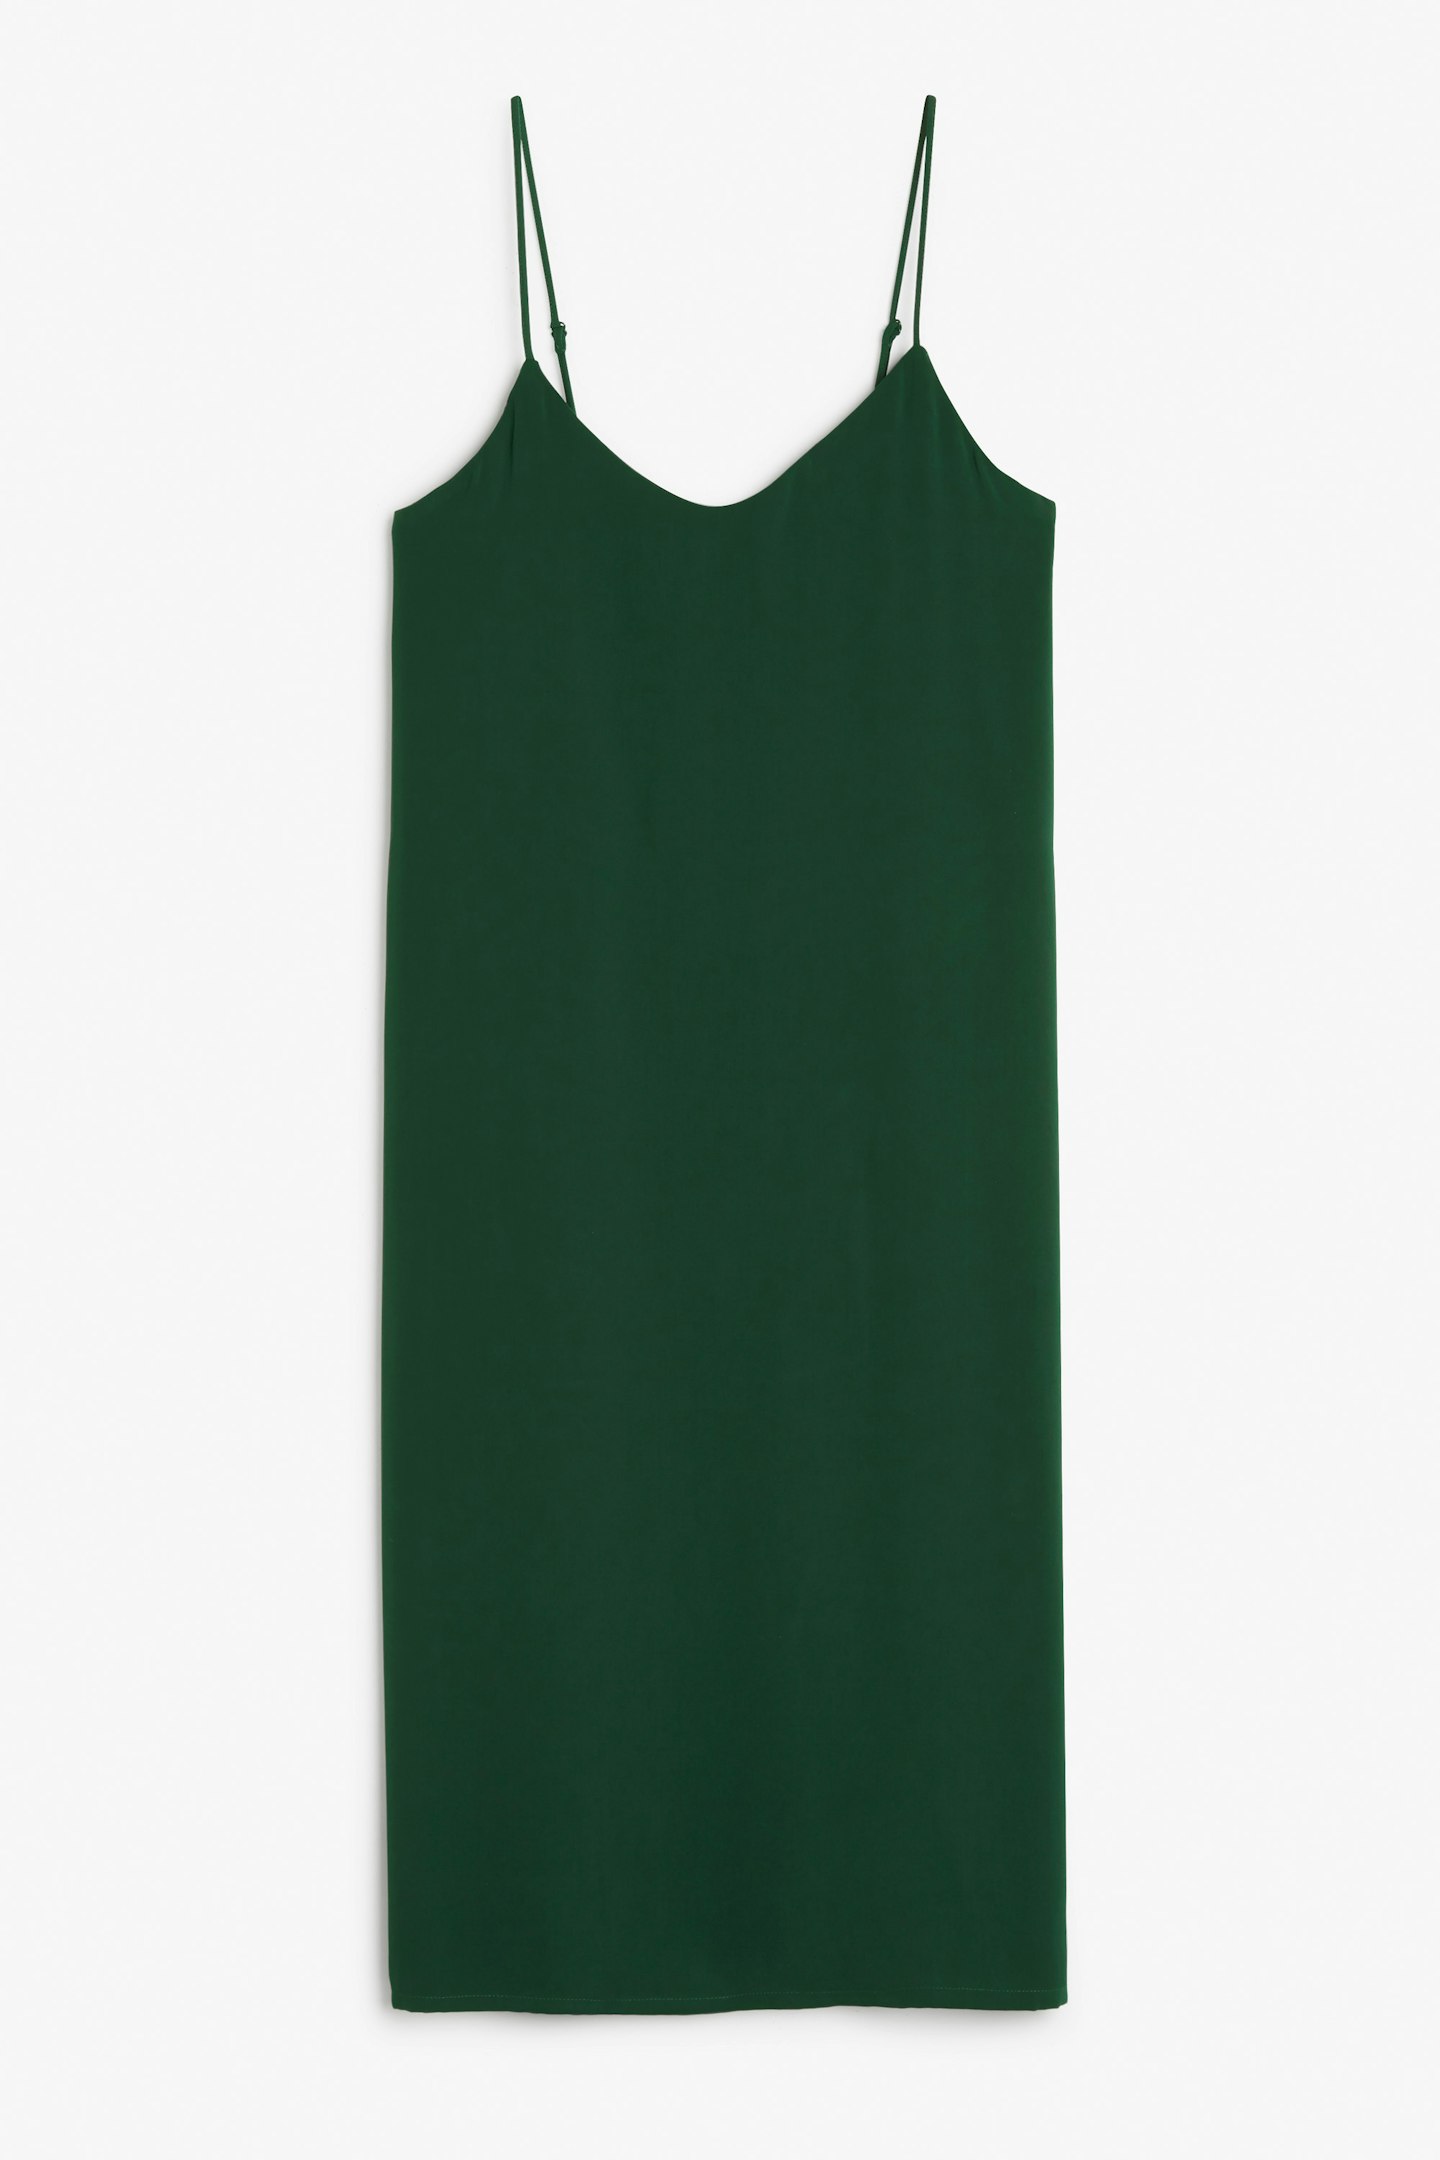 Monki Slip Dress, £30